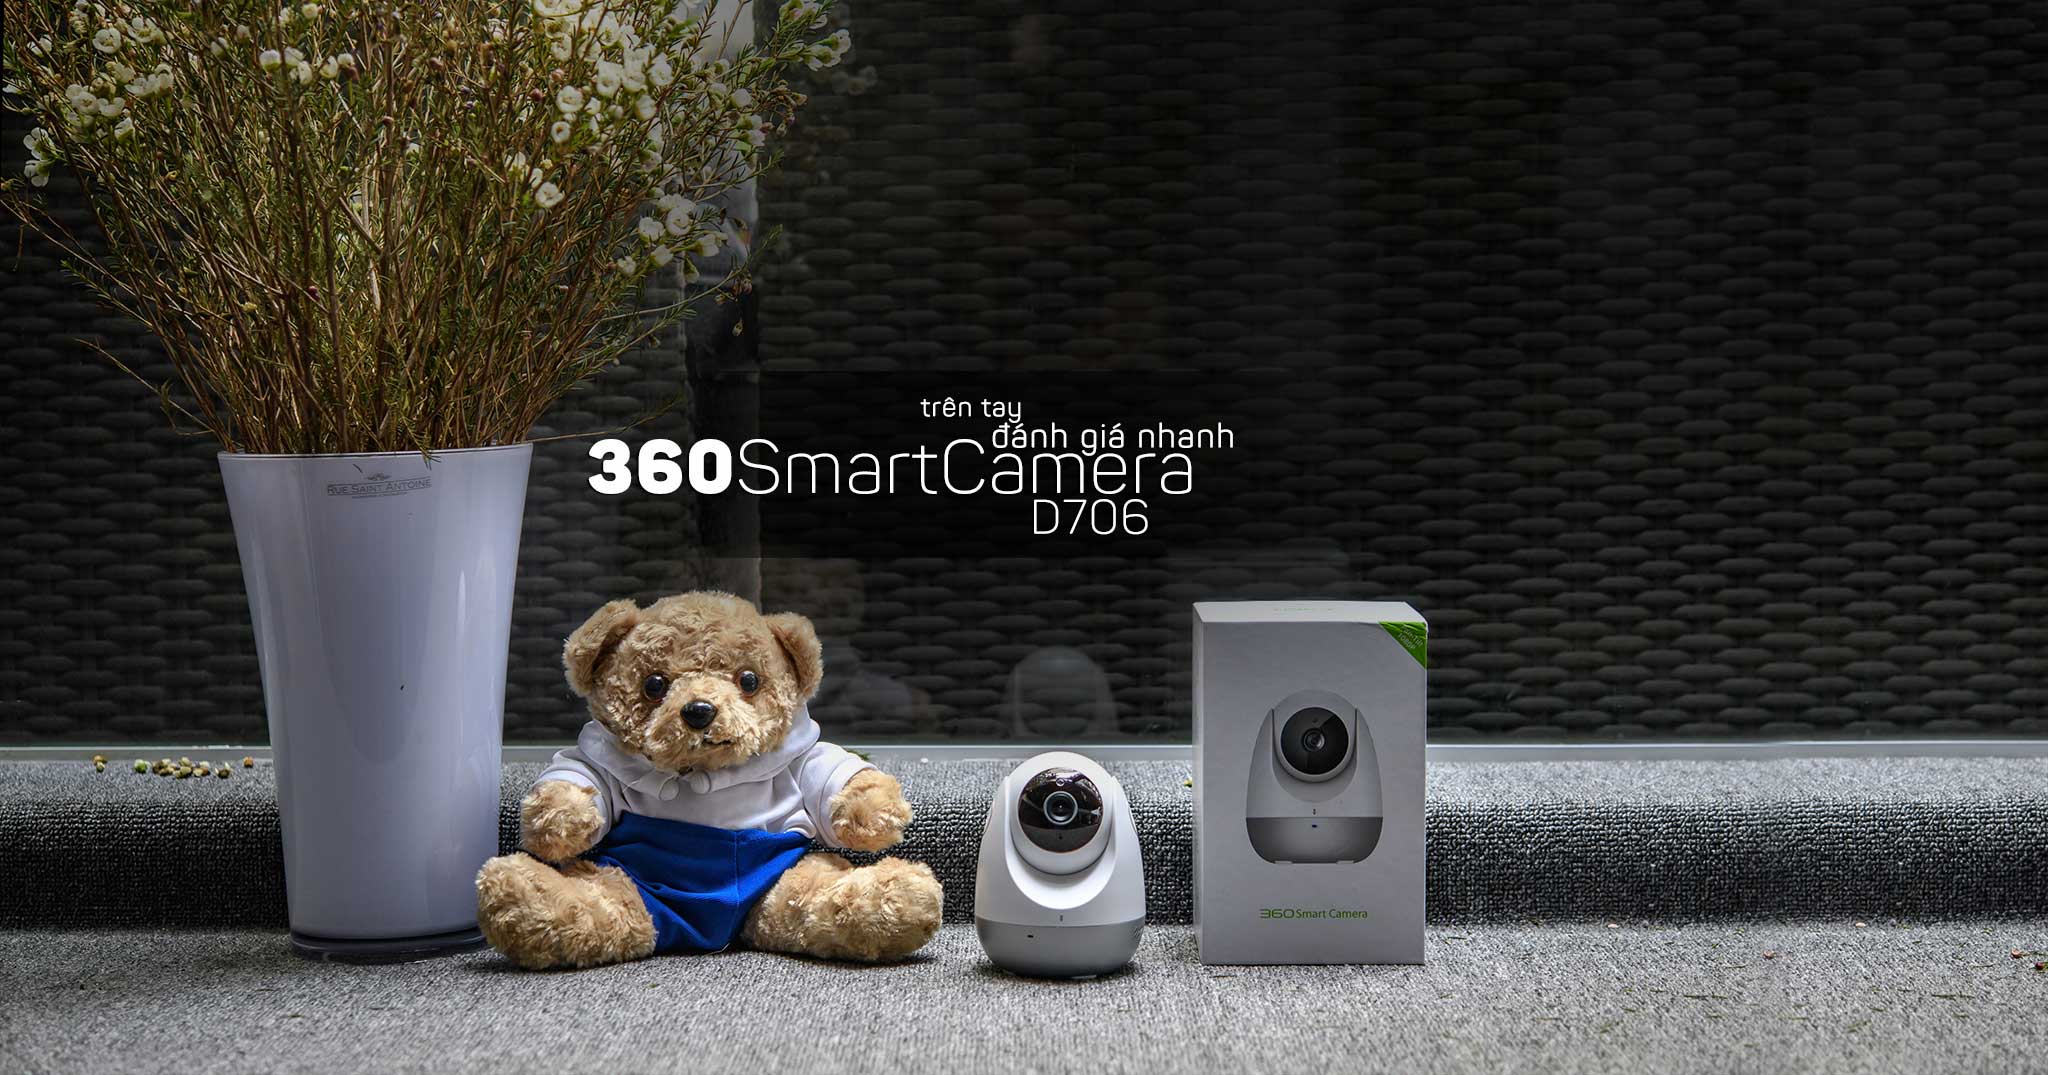 Trên tay và đánh giá camera quan sát 360SmartCamera D706/1080p: chất lượng video trung bình khá